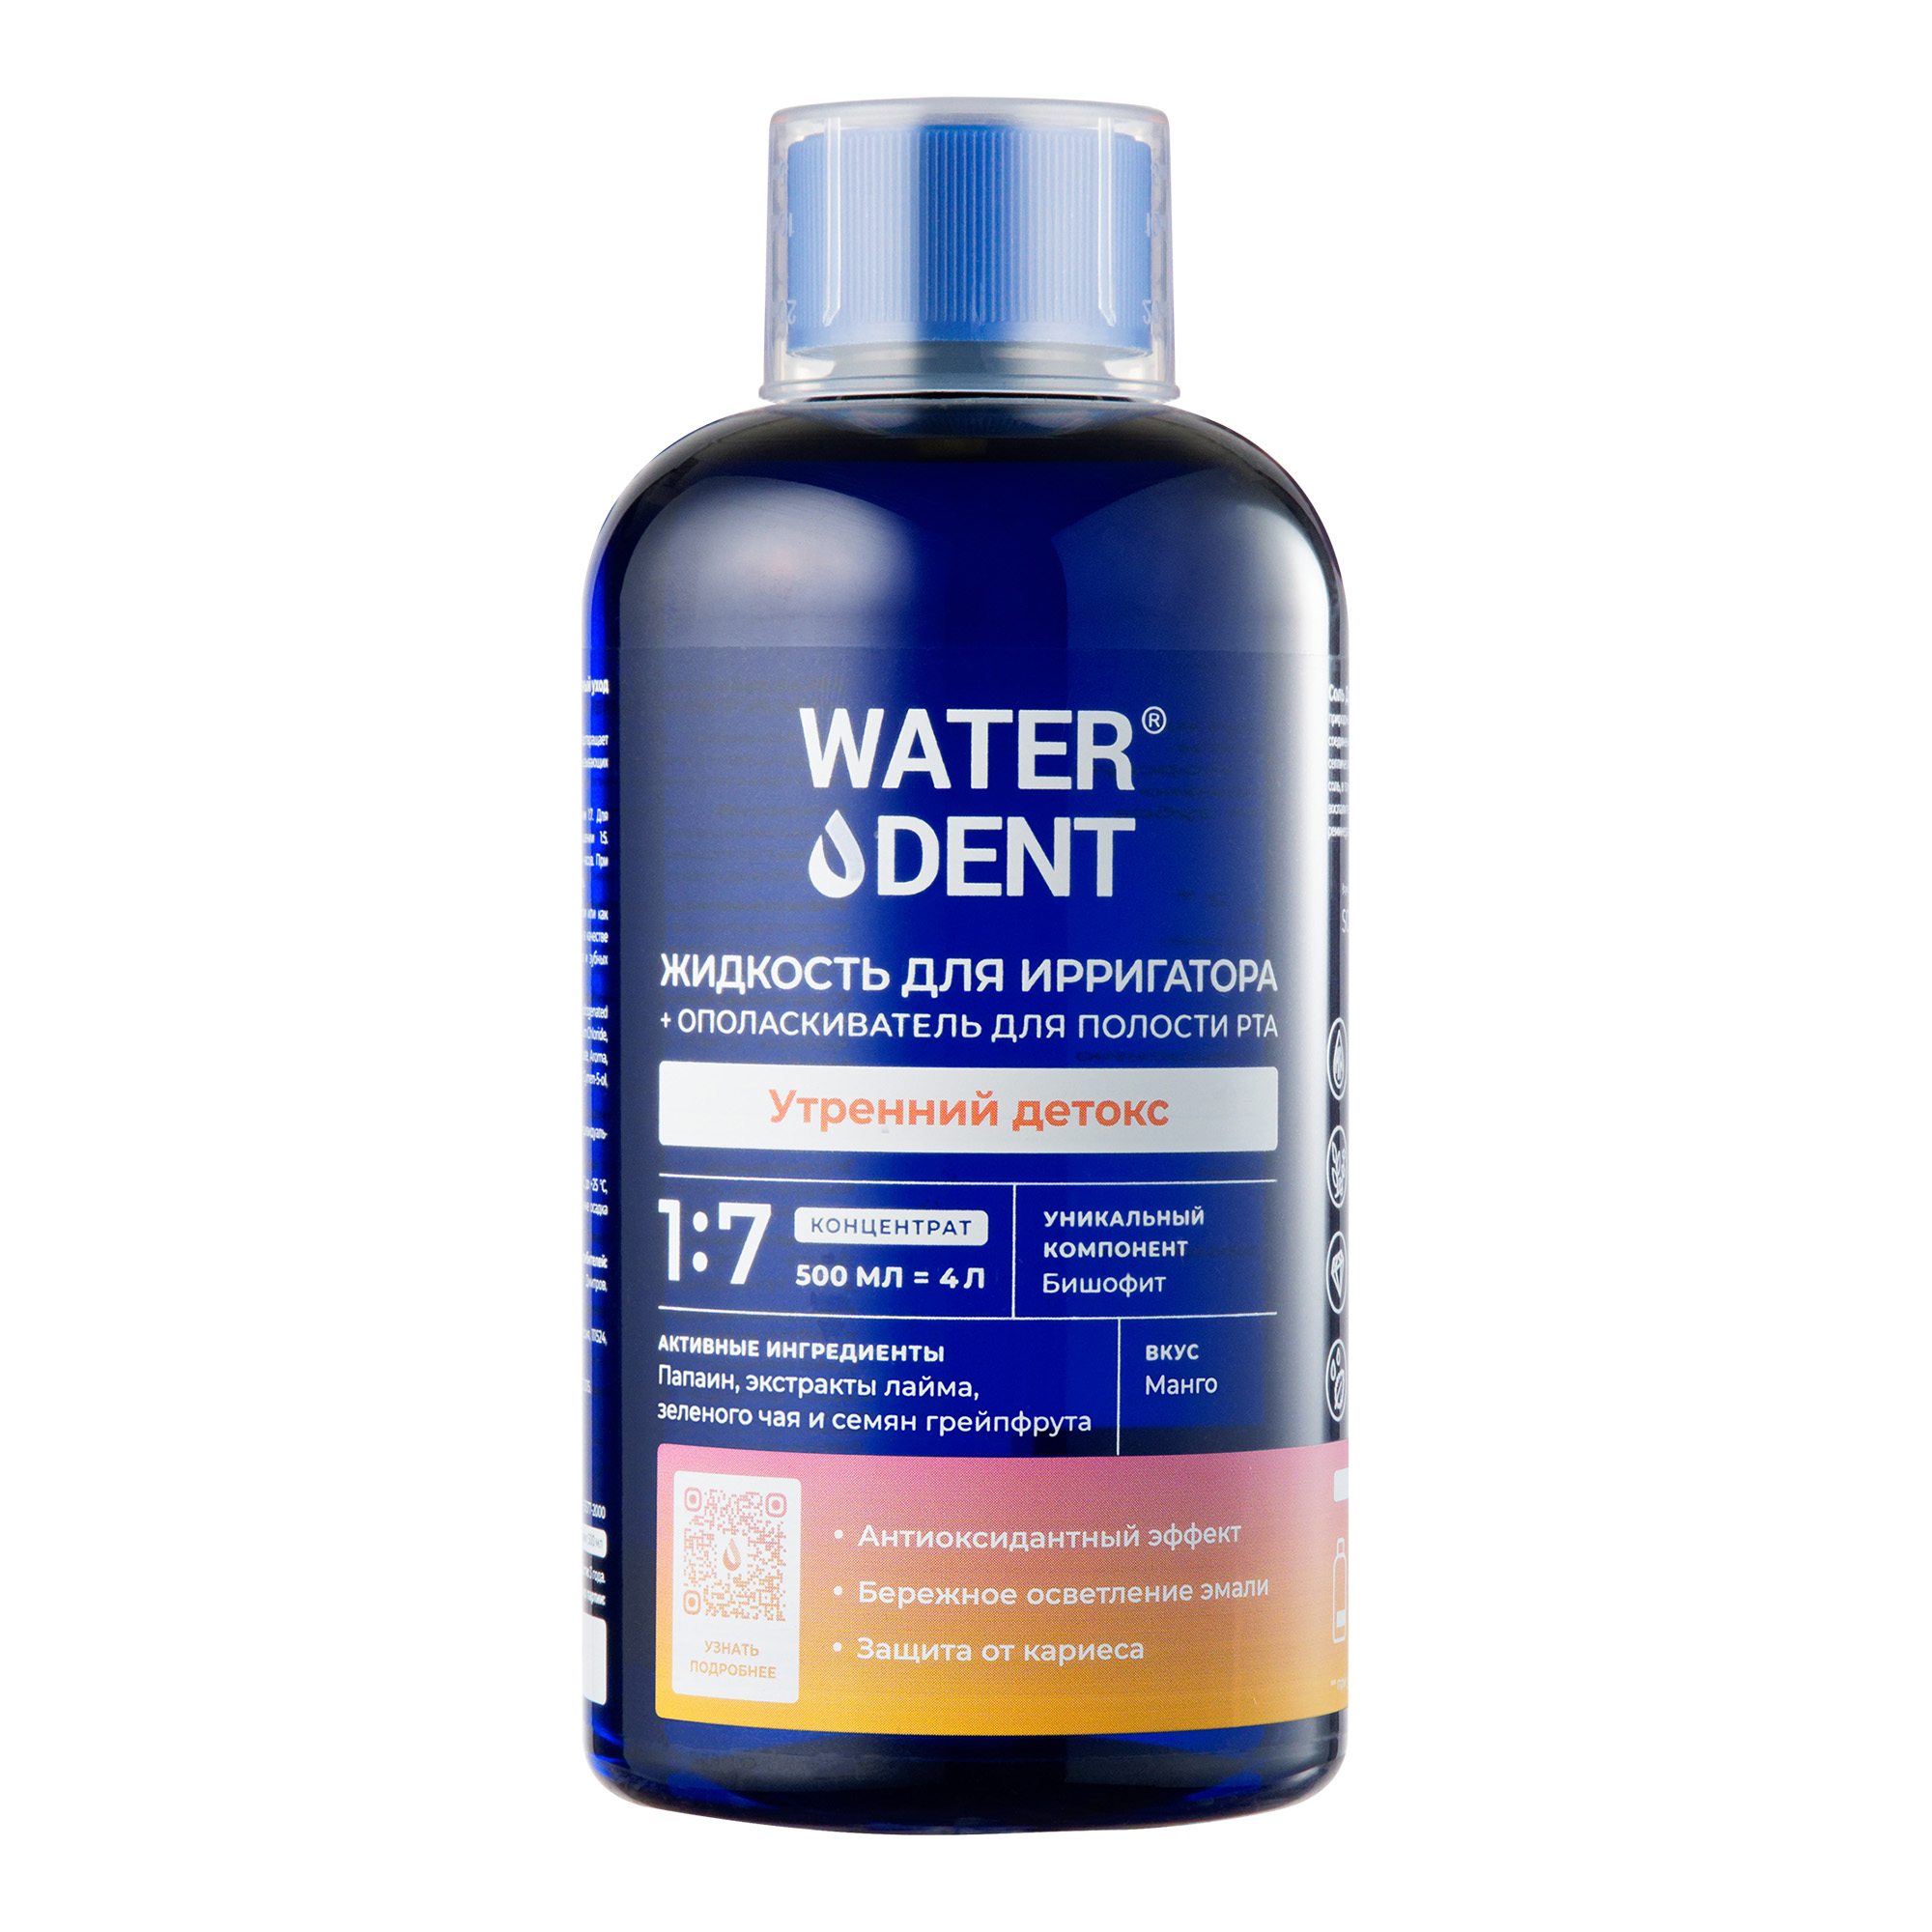 Waterdent, жидкость для ирригатора Утренний детокс Манго, флакон 500 мл жидкость для ирригатора waterdent teens анти кариес 500 мл